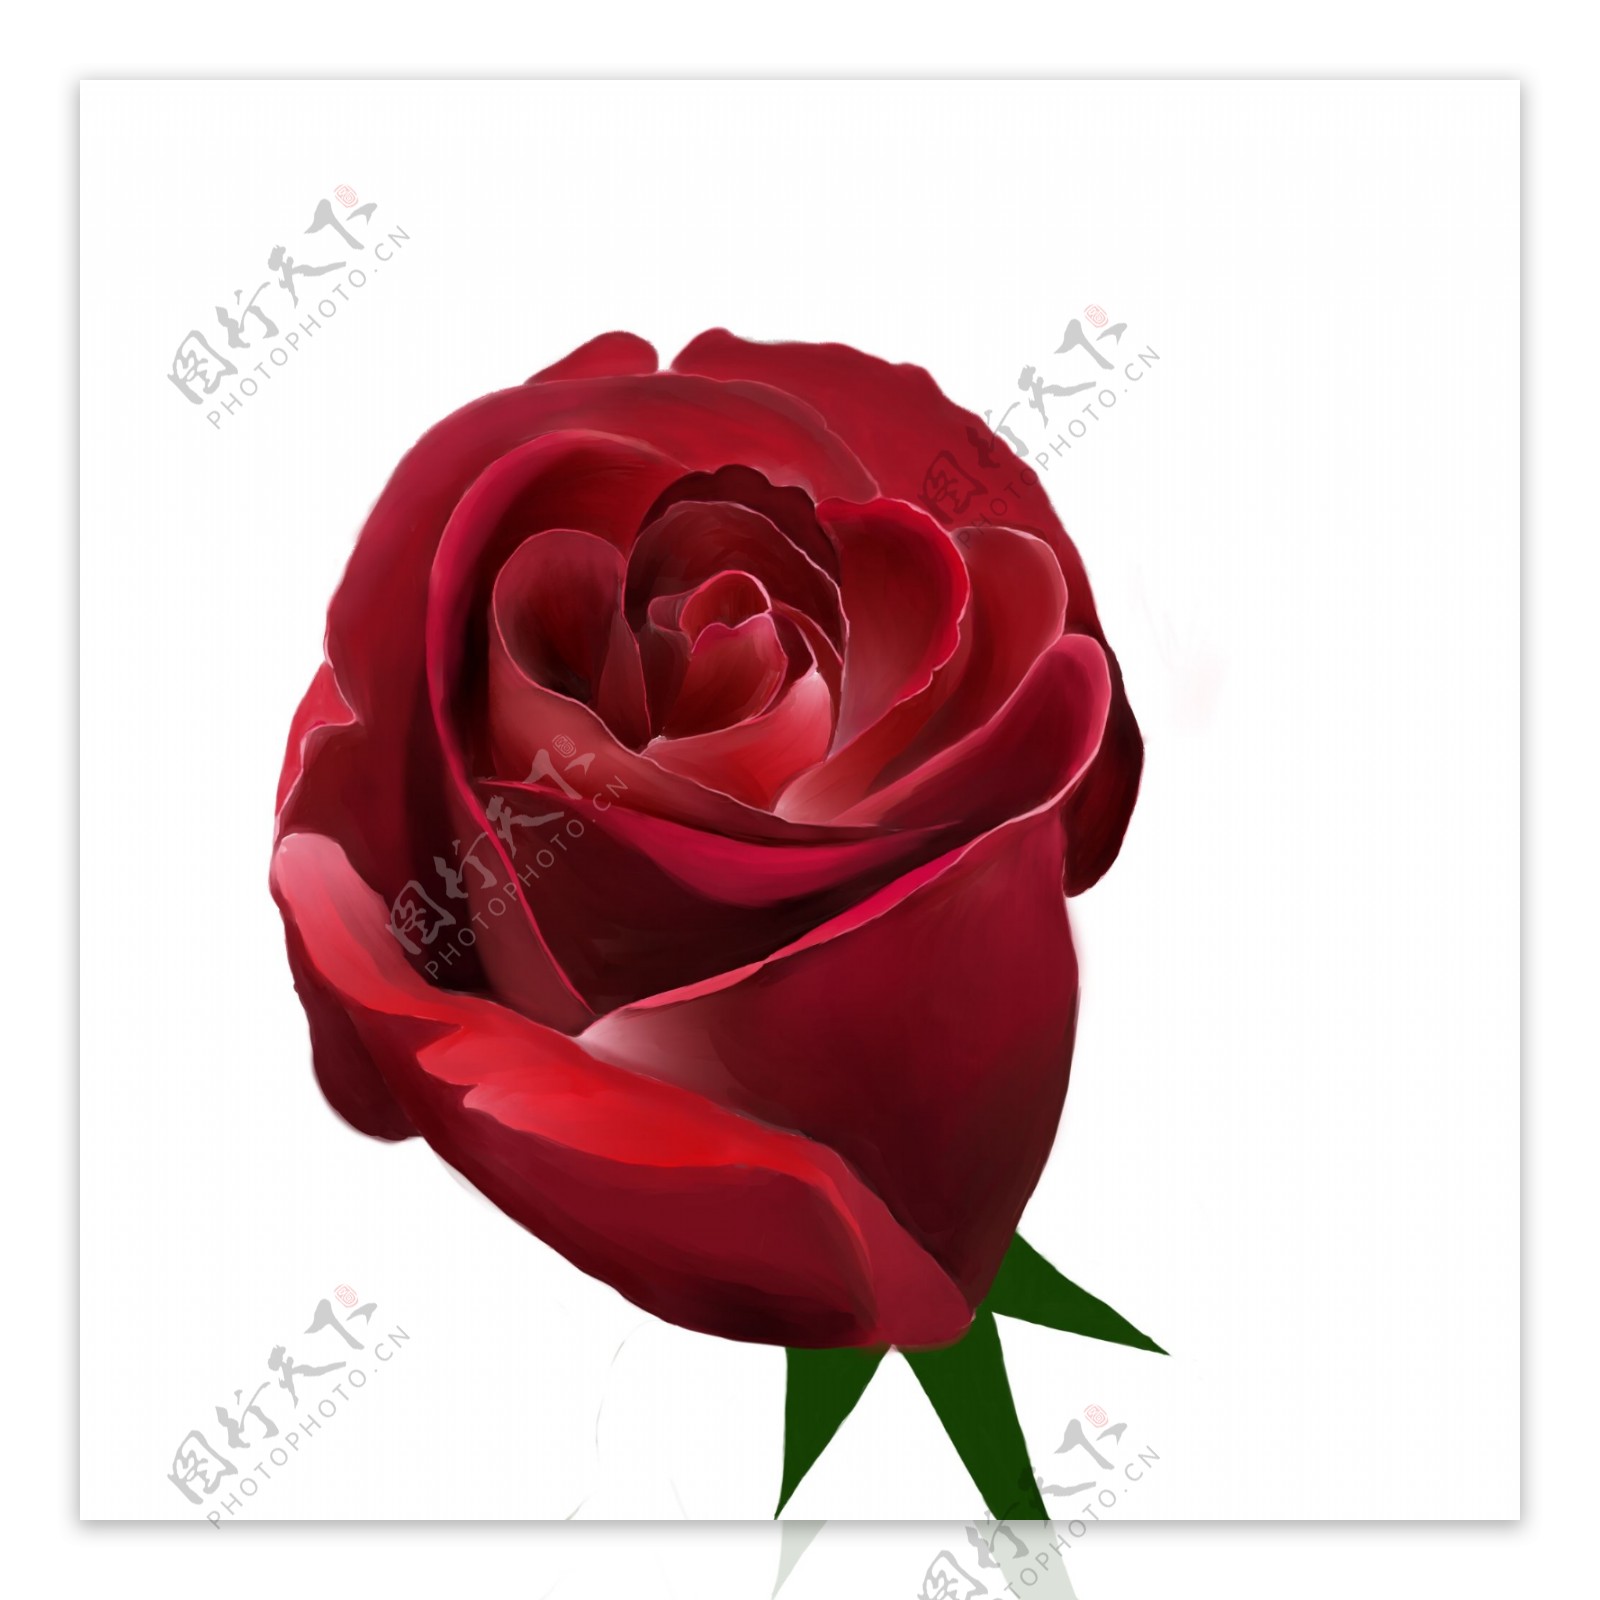 玫瑰花红色玫瑰手绘玫瑰浪漫